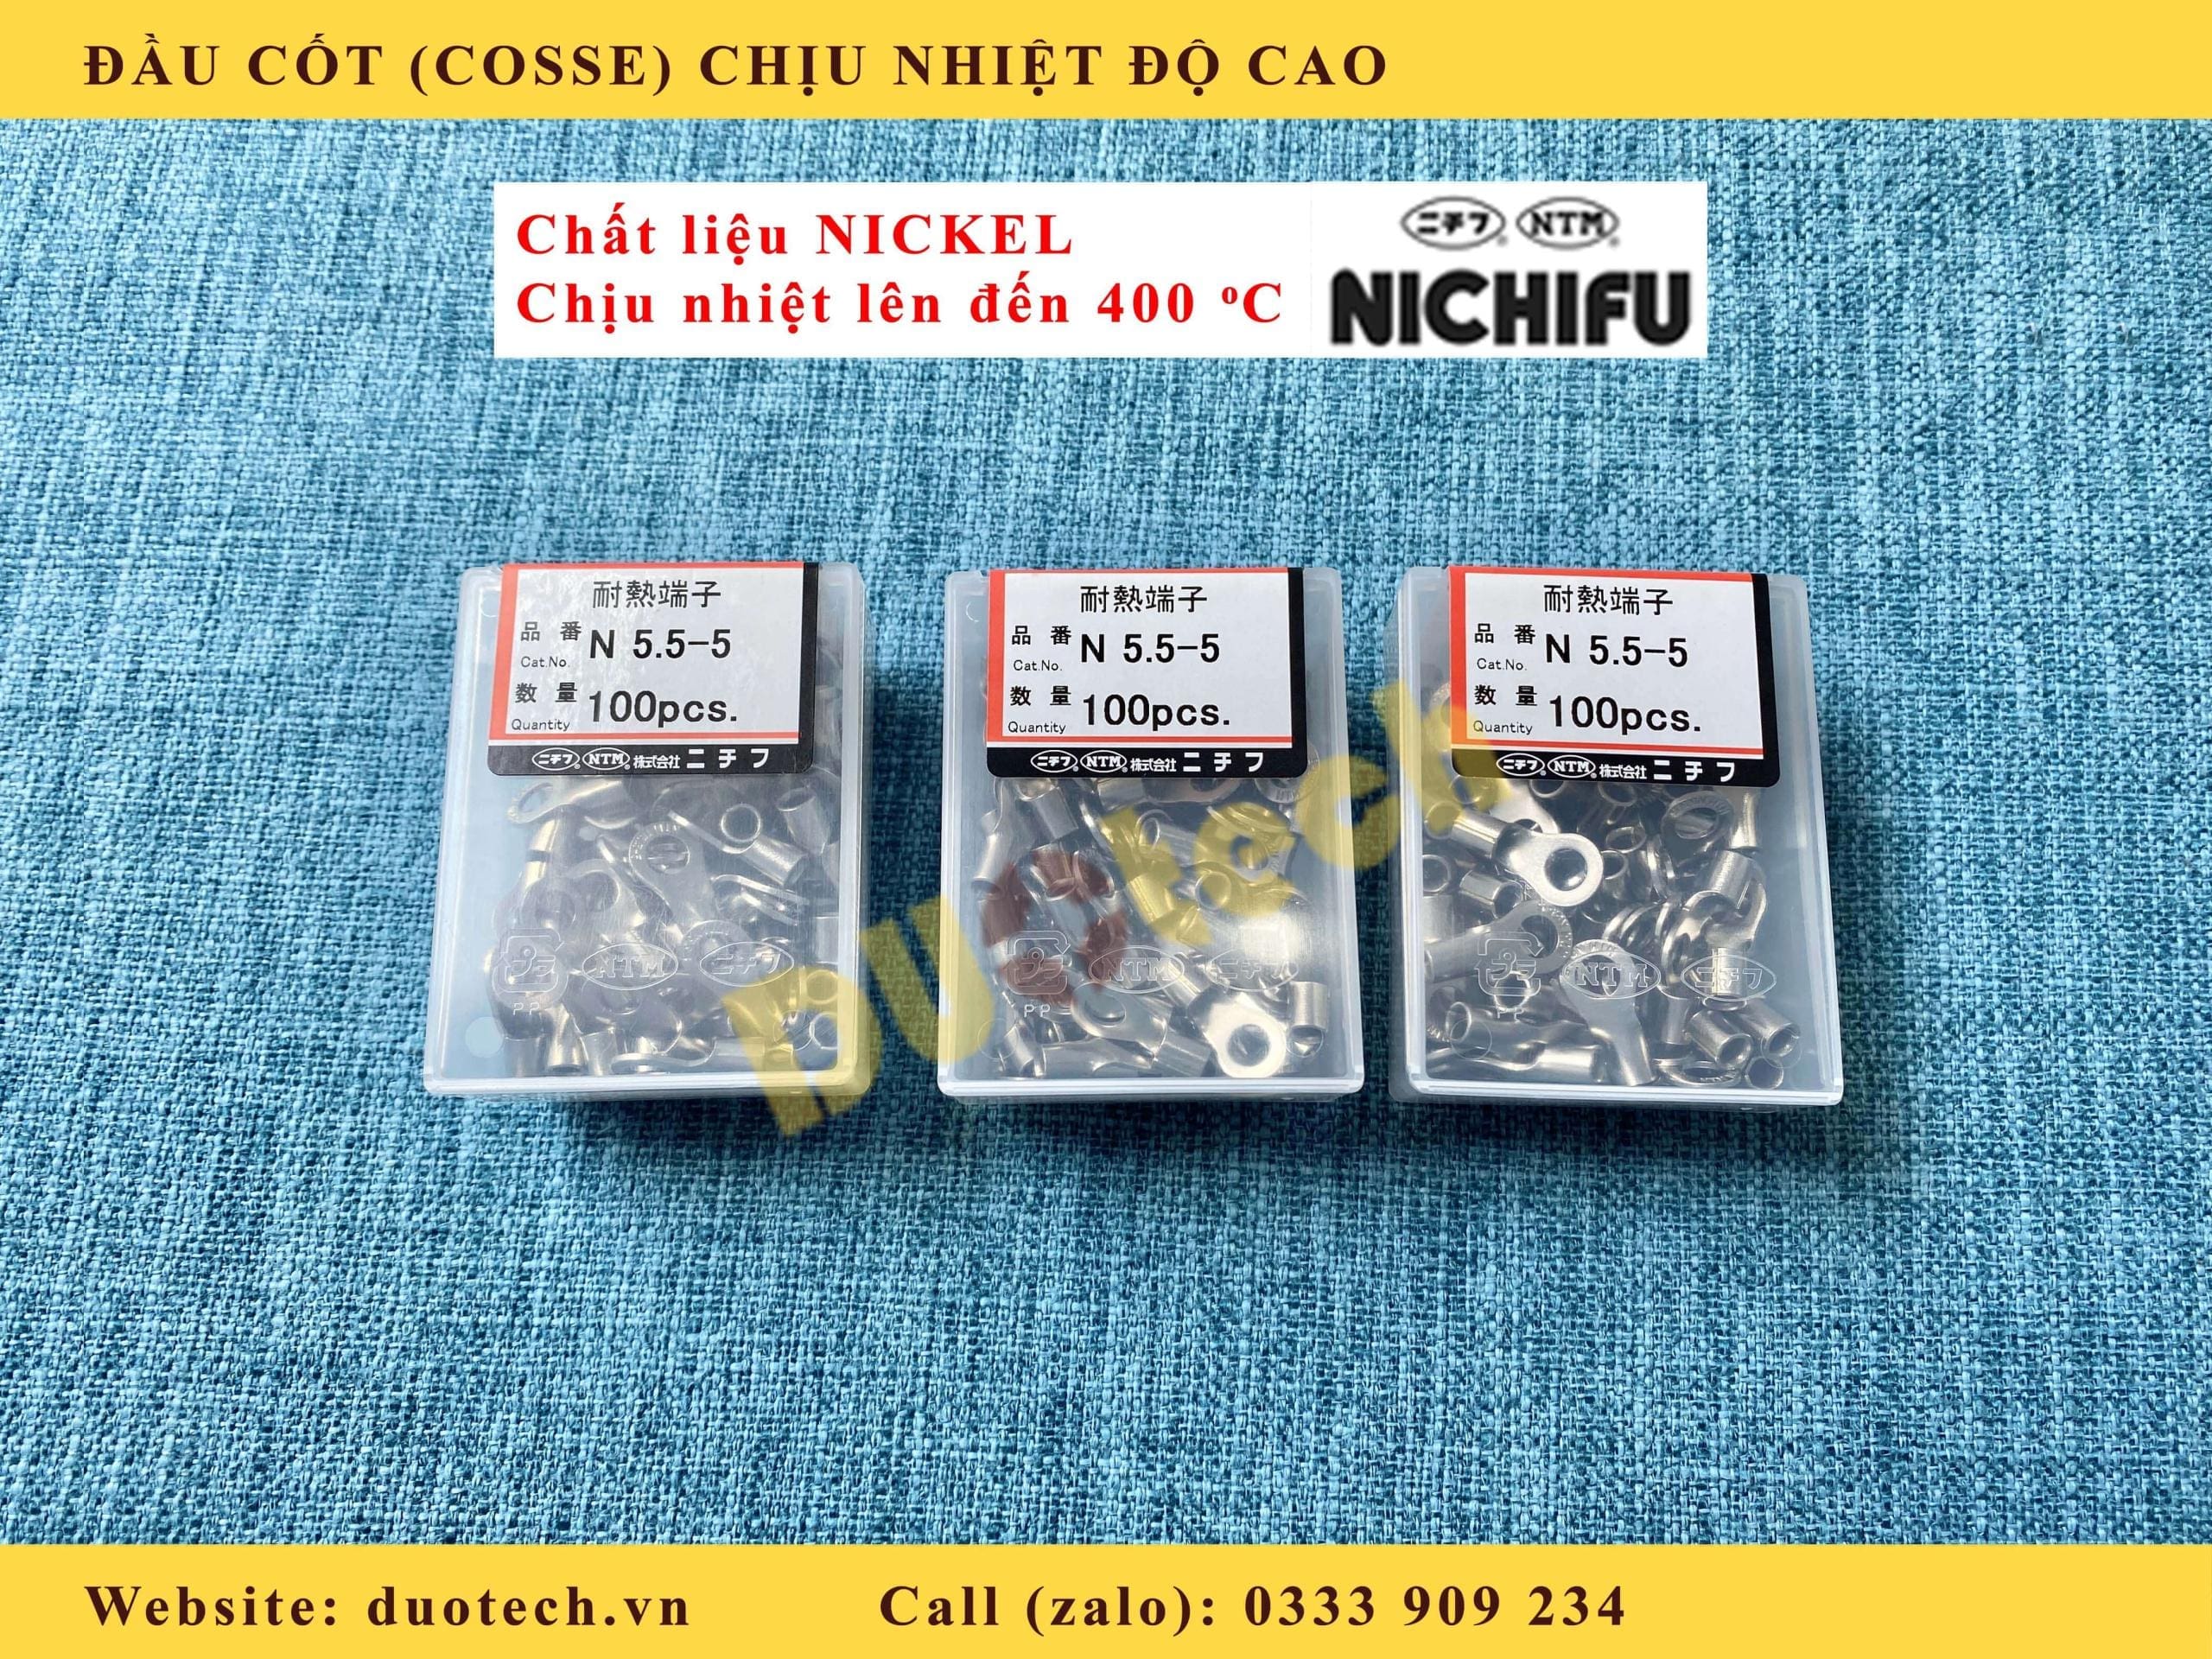 đầu cos chịu nhiệt nichifu; đầu cos chịu nhiệt nickel nichifu; đầu cos n5.5-4 nichifu; đầu cos n5.5-4 nickel nichifu; đầu cos n5.5-5 nichifu; đầu cos n5.5-5 nickel nichifu; đầu cos n5.5-6 nichifu; đầu cos n5.5-6 nickel nichifu; đầu cosse chịu nhiệt độ cao; đầu cos nickel chịu nhiệt độ cao; n5.5-4; n5.5-5; n5.5-6; n5.5-8; n 5.5-4; n 5.5-5; n 5.5-6; n 5.5-8; n 5.5-4 nichifu; n 5.5-5 nichifu; n 5.5-6 nichifu; n 5.5-8 nichifu; cos n 5.5-4 nichifu; cos n 5.5-5 nichifu; cos n 5.5-6 nichifu; cos n 5.5-8 nichifu; đầu cos chịu nhiệt; đầu cos chịu nhiệt độ cao nichifu; cos chịu nhiệt độ cao nichifu; đầu cốt điện chịu nhiệt độ cao (dòng nickel); đầu cos nickel; đầu cos nicken; đầu cos nhiệt độ cao 400 độ; đầu cốt chịu nhiệt; đầu cosse chịu nhiệt; đầu cốt chịu nhiệt độ cao; đầu cosse chịu nhiệt chất liệu thép mạ nickel; đầu cosse chịu nhiệt dòng ring; đầu cosse chịu nhiệt dòng b (nối thẳng); đầu cos nickel nichifu; cos nickel nichifu; đầu cốt chịu nhiệt độ cao; đầu cosse chịu nhiệt nichifu; cos tròn chịu nhiệt độ cao; cos tròn nickel nichifu;